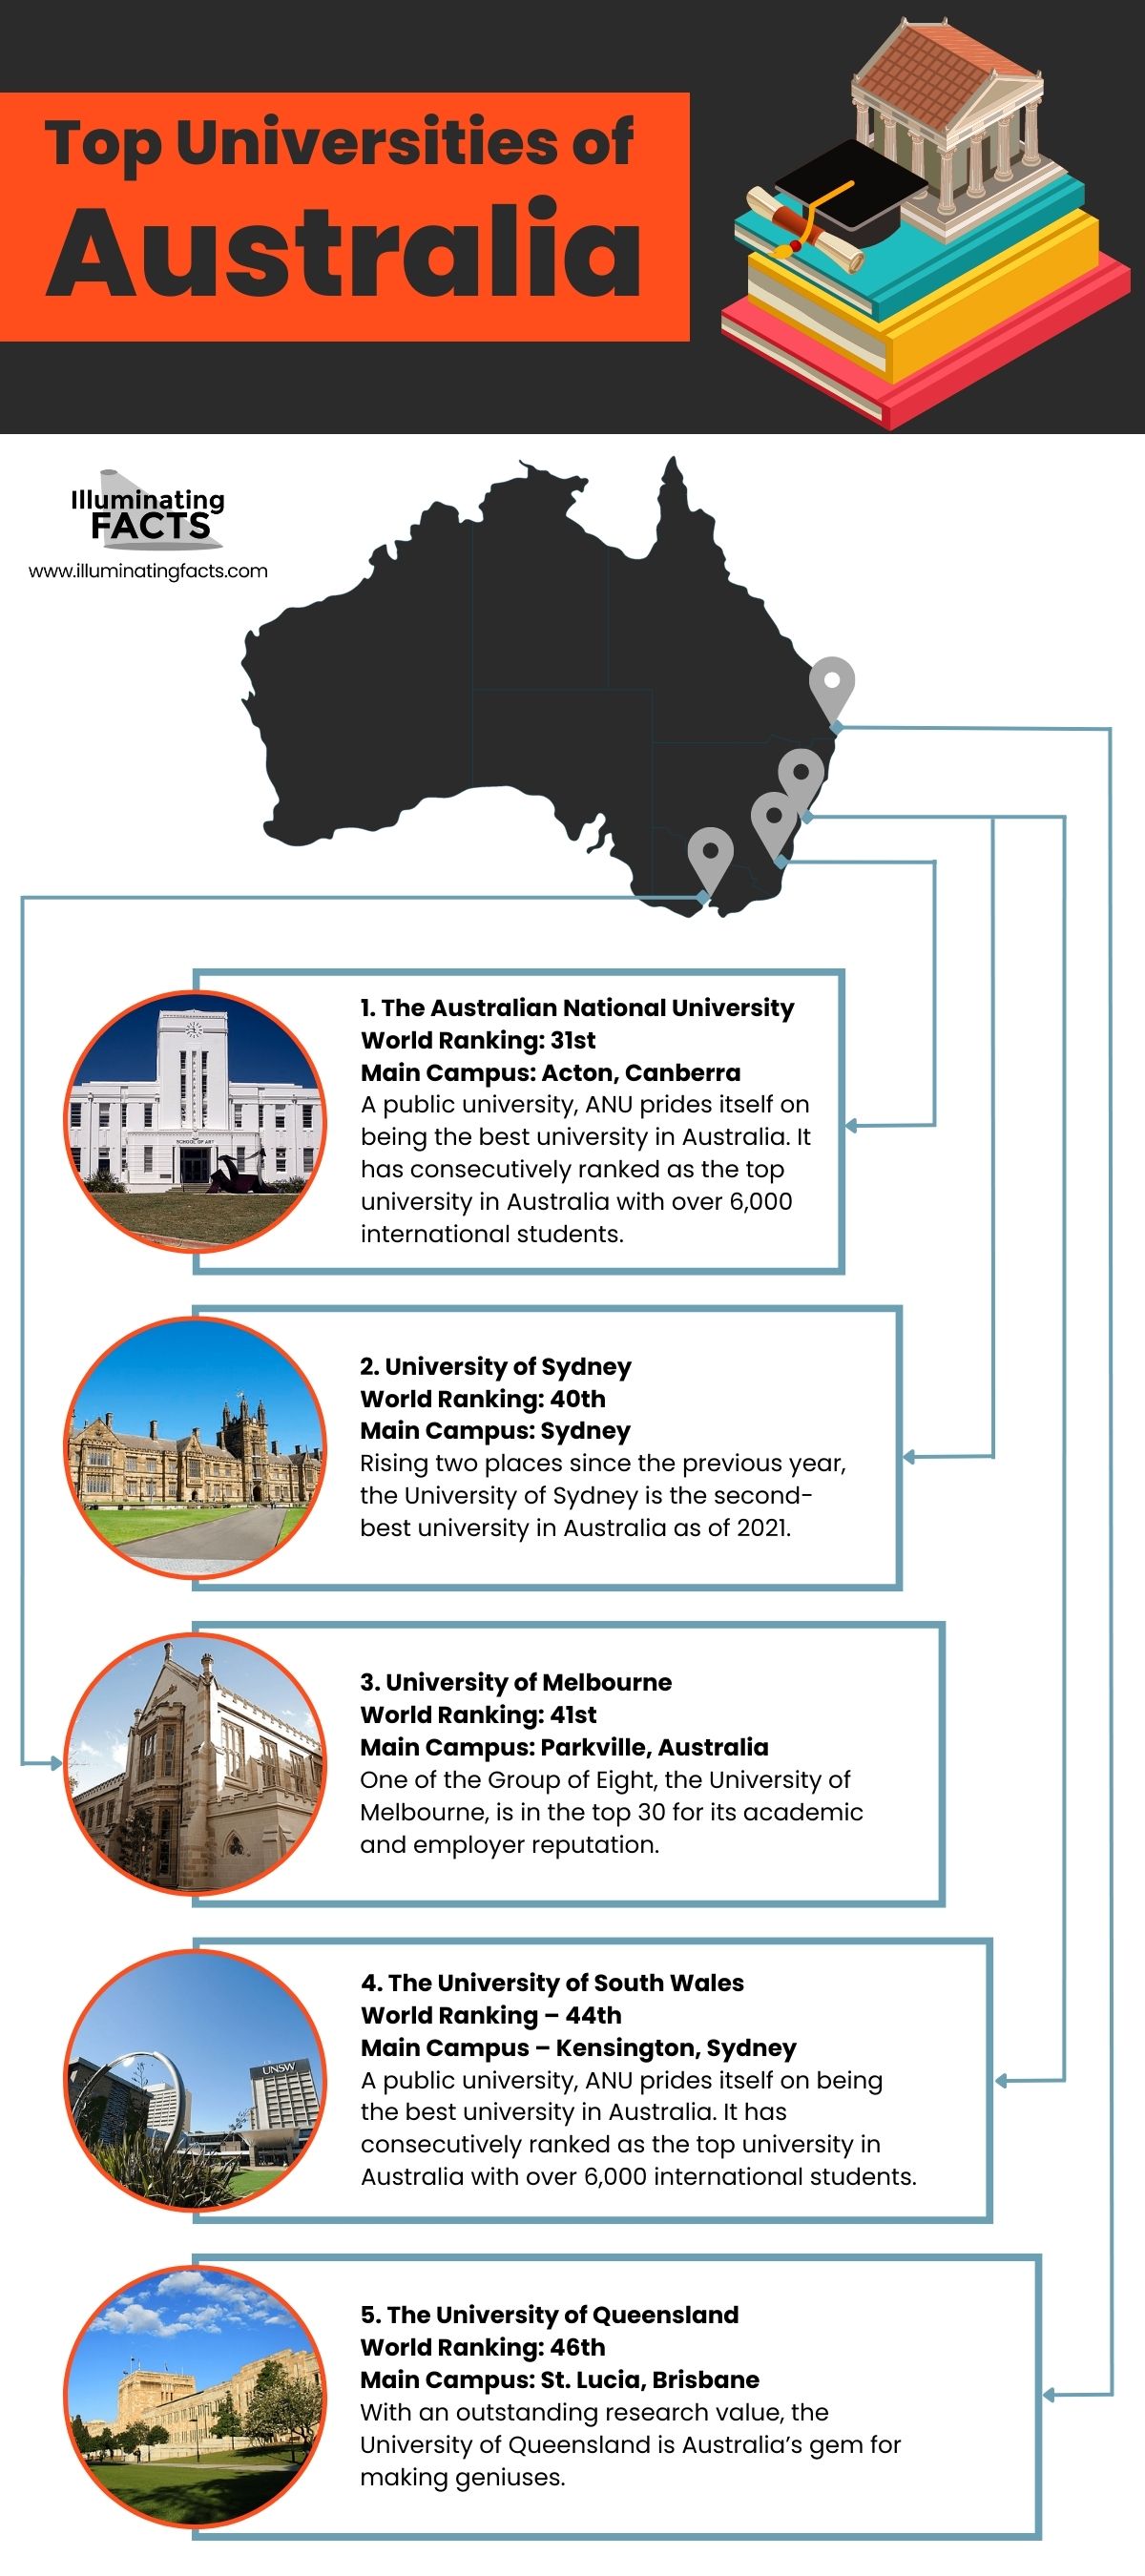 Top Universities of Australia